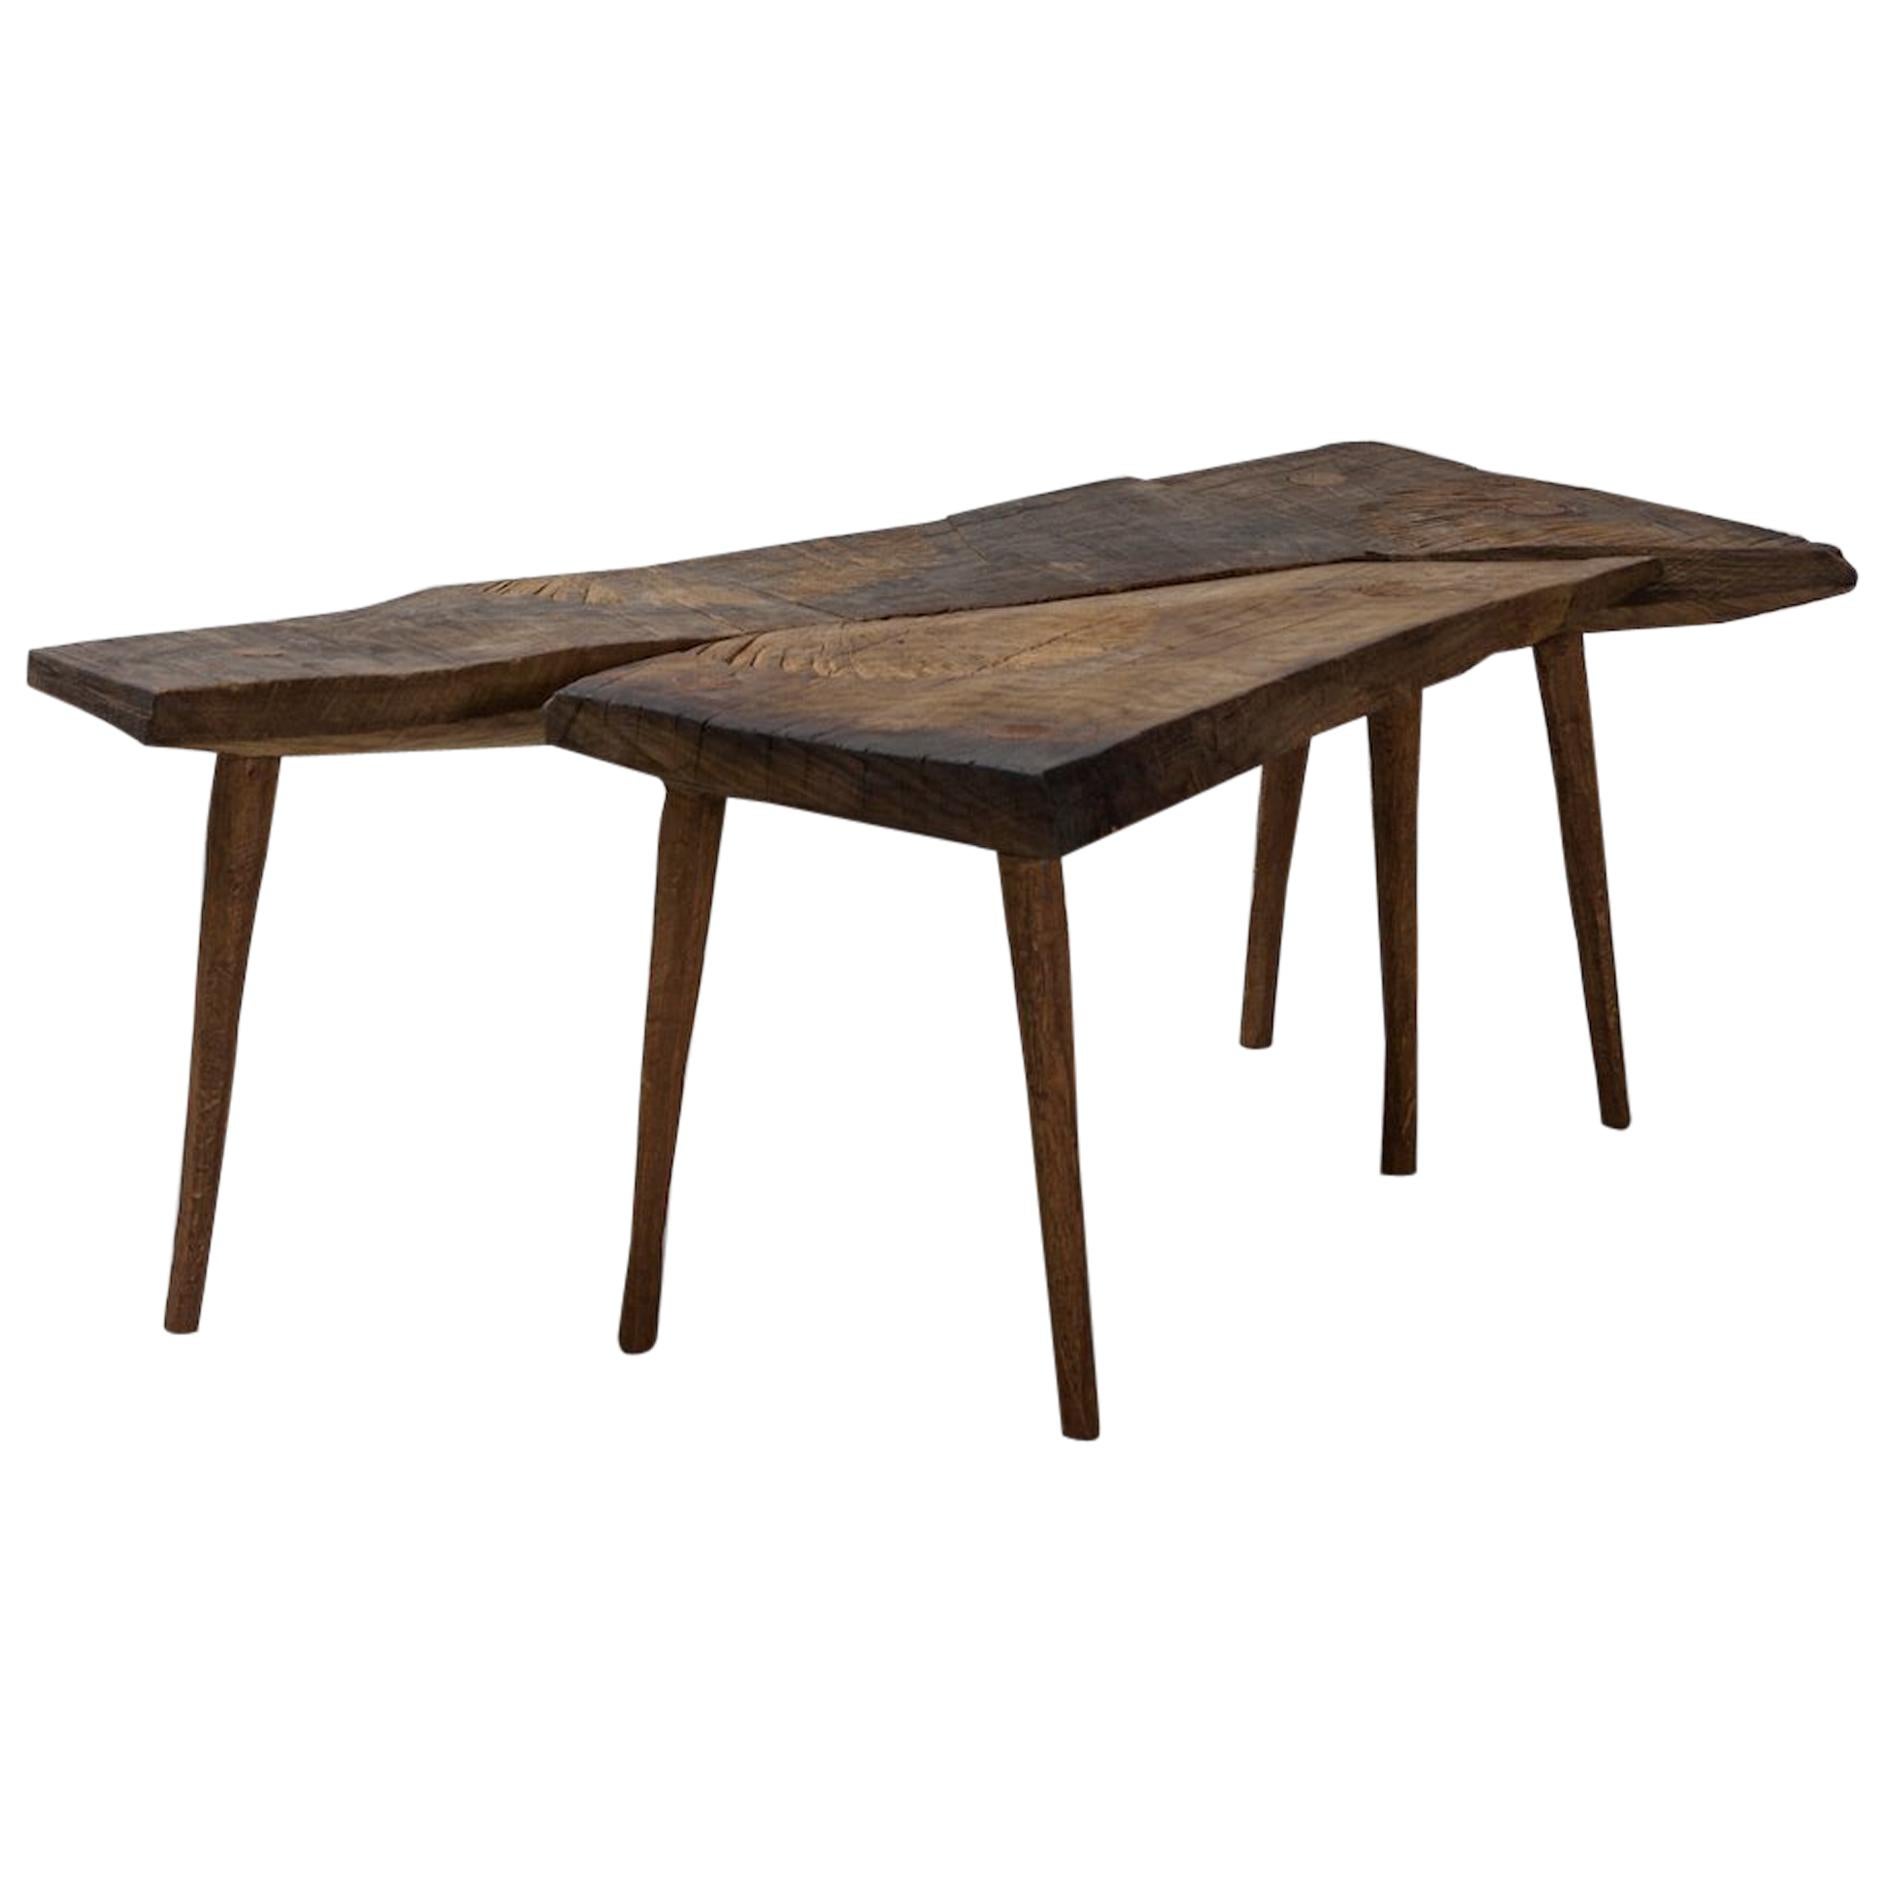 Petite table n°2 contemporaine de style brutaliste en chêne massif et huile de lin en vente